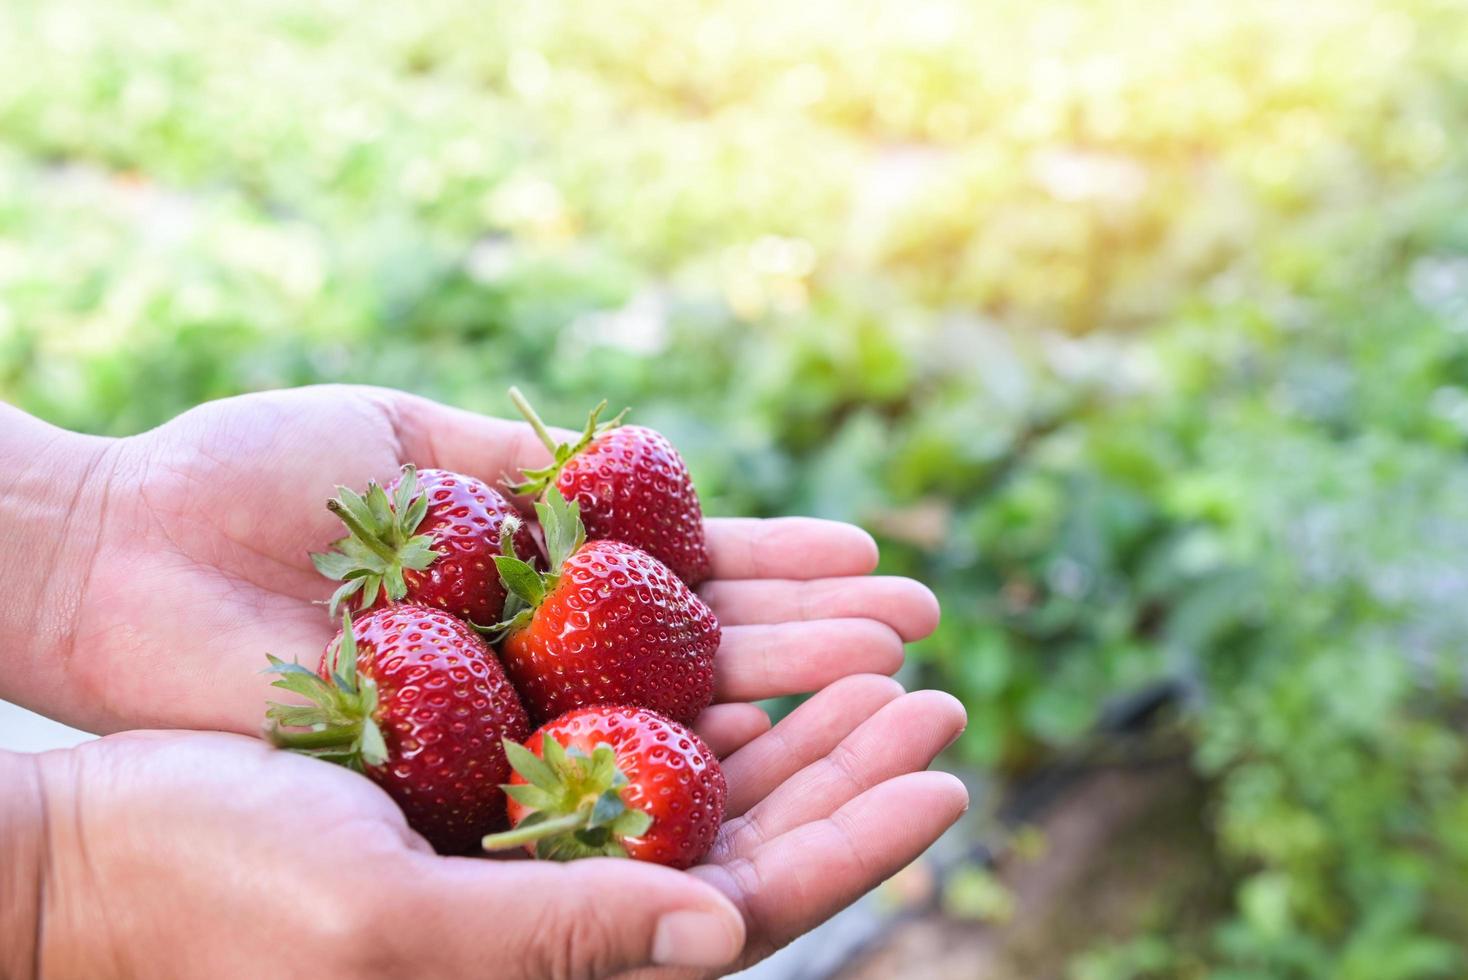 granja de plantas de fresa, campo de fresas maduras frescas para cosechar fresas recogiendo a mano en el jardín fruta recolectada fresa en verano foto